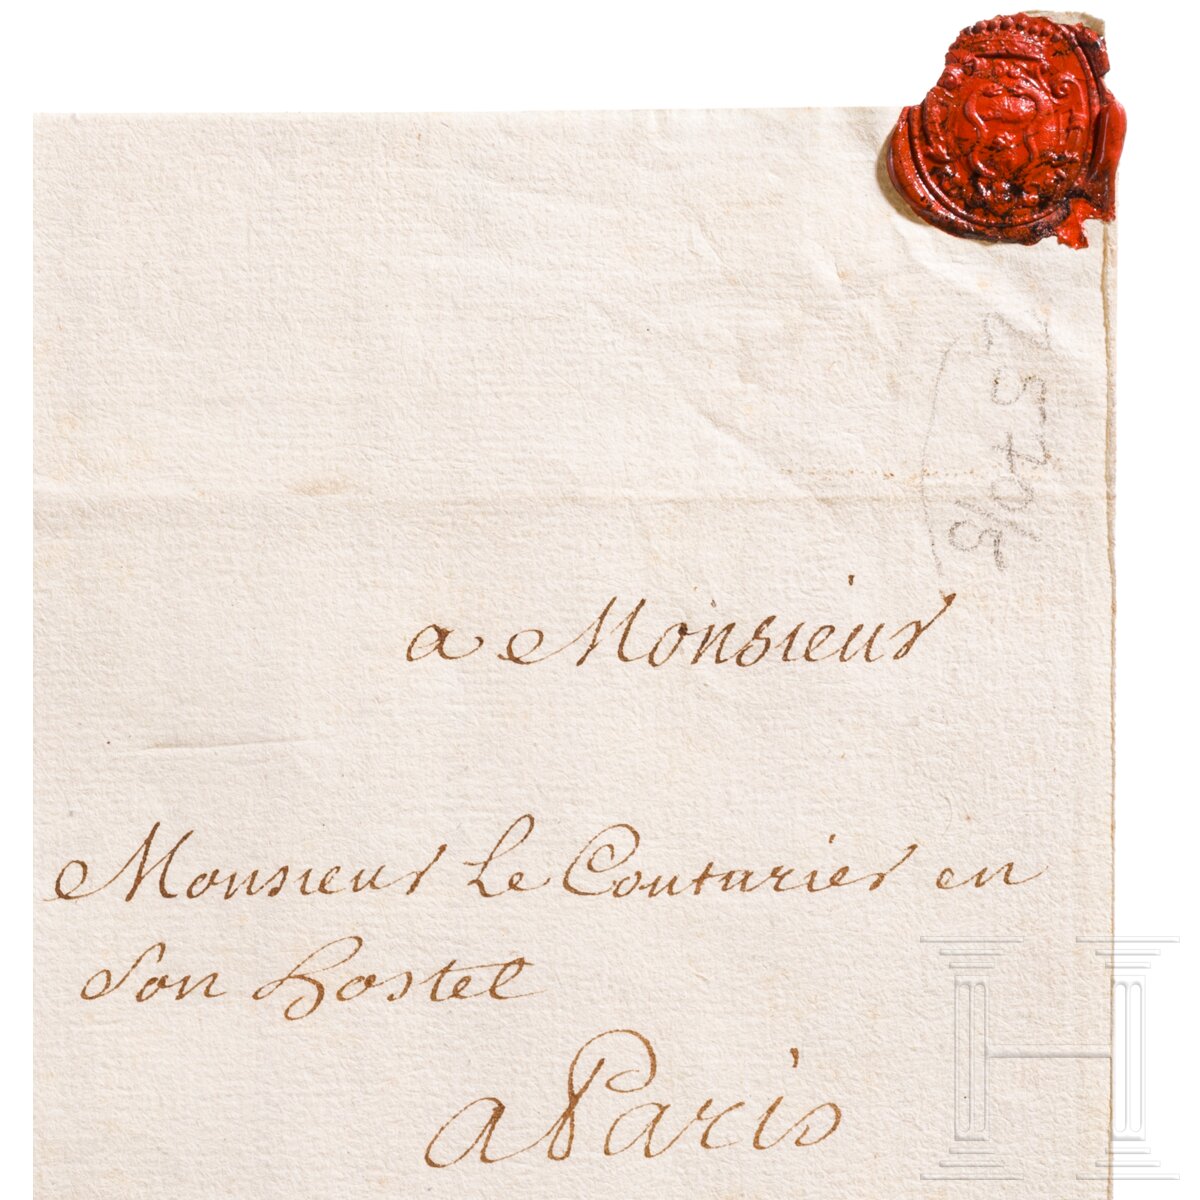 Scharfrichter Charles Sanson - Brief vom 30.1.1720 - Image 3 of 3